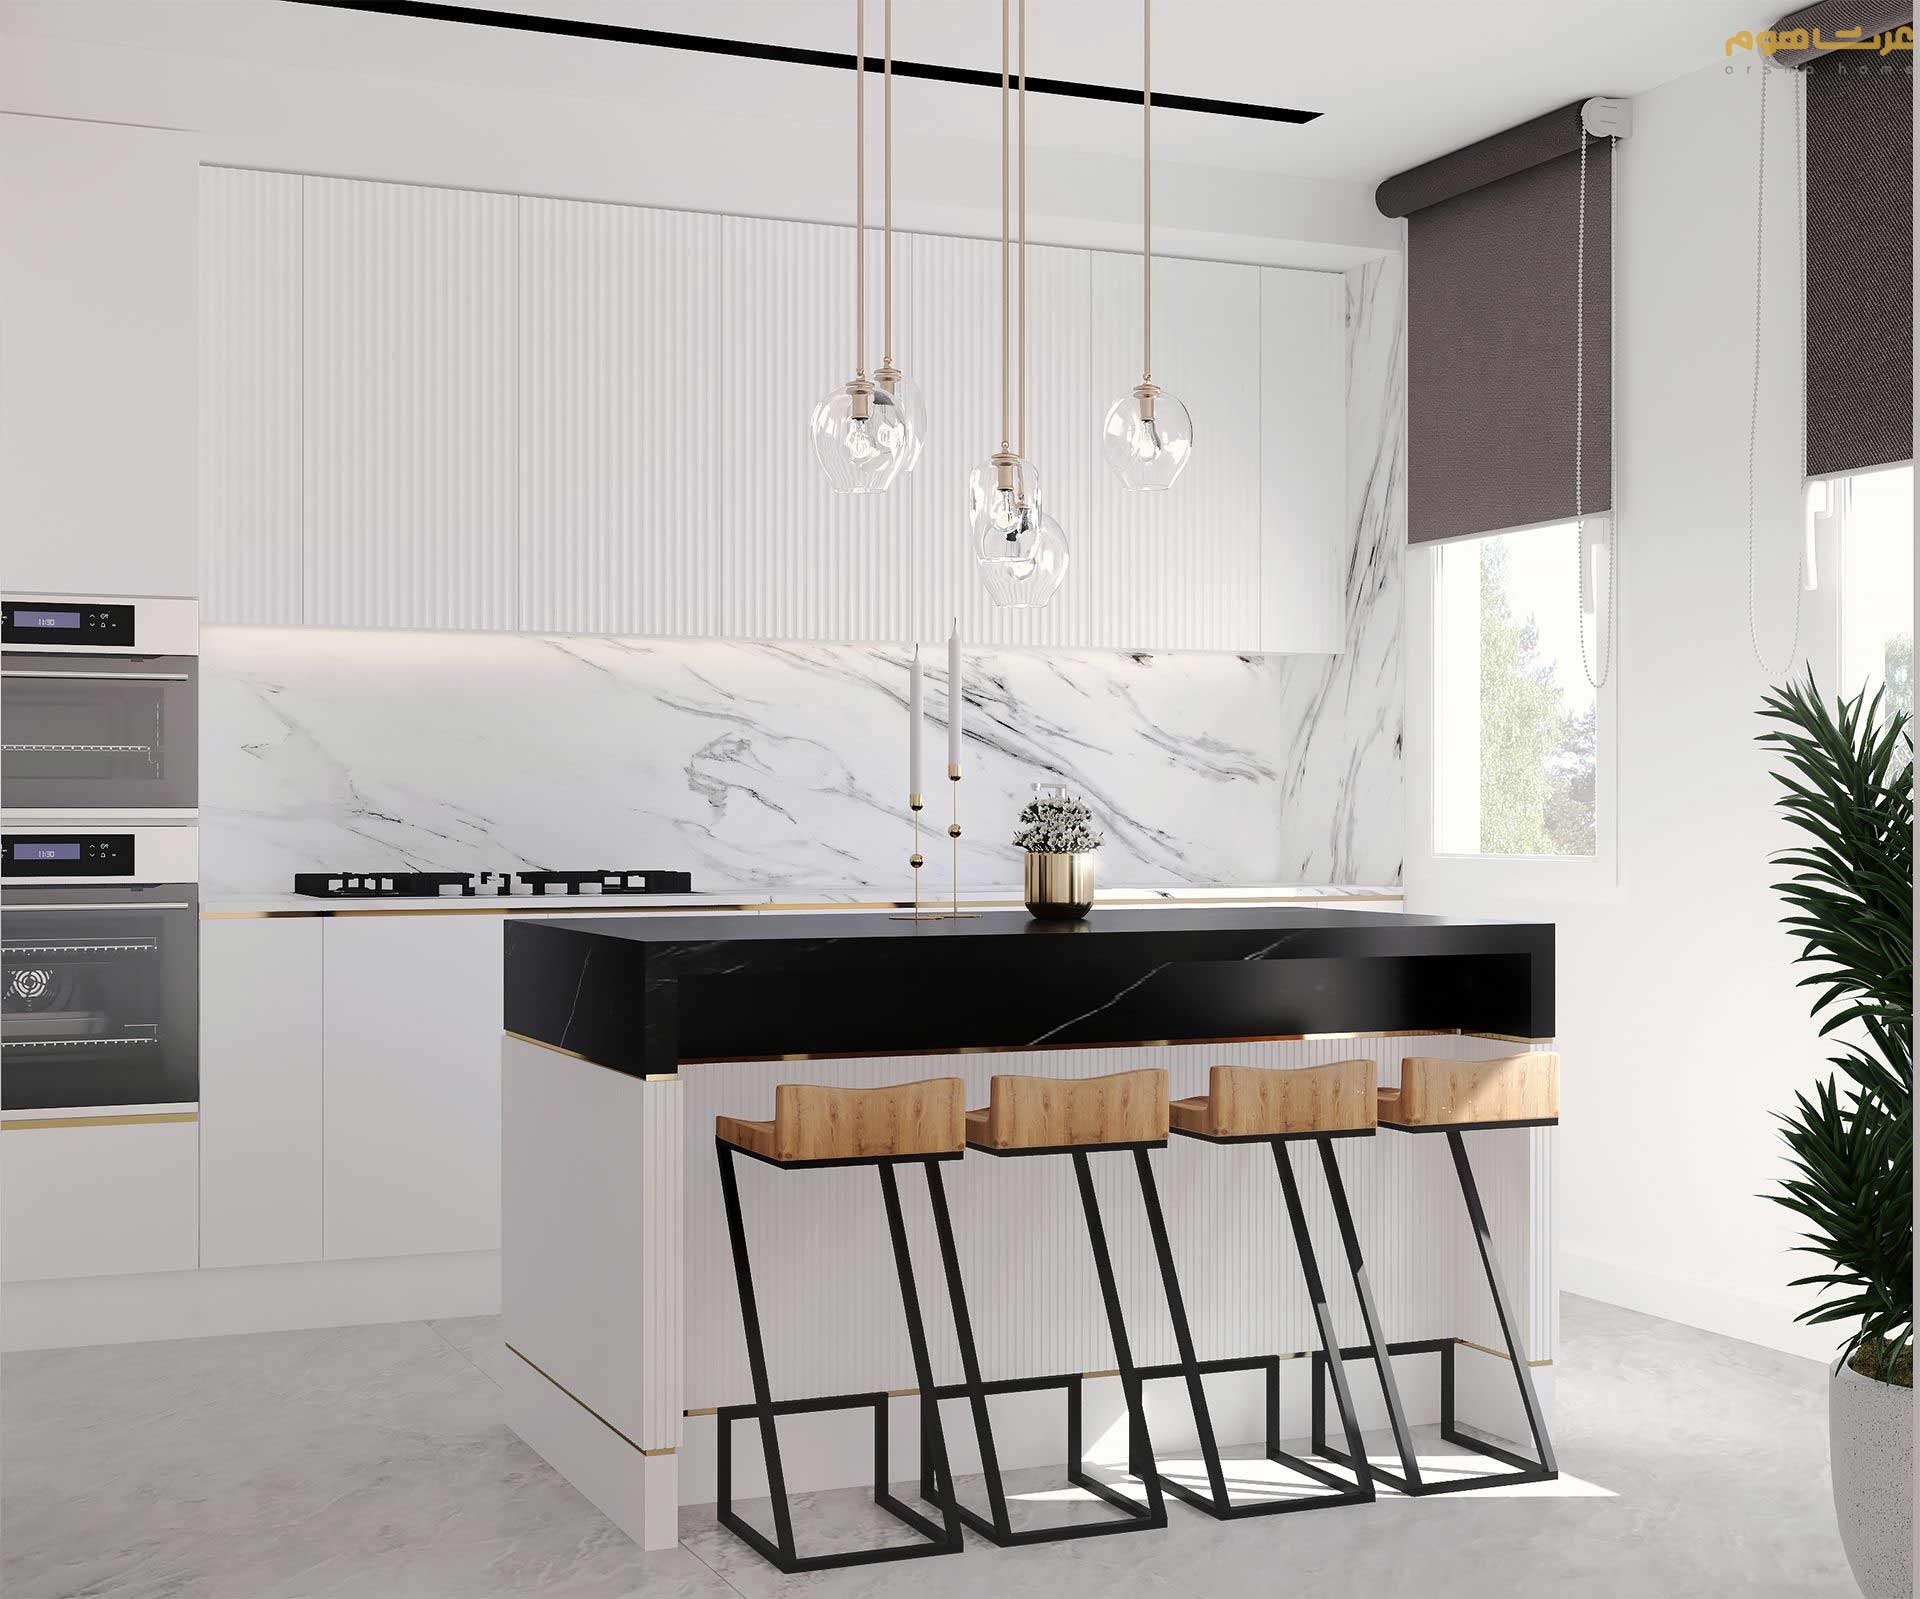 طراحی داخلی آشپزخانه سفید مدرن اراک تک واحدی نیکفرد